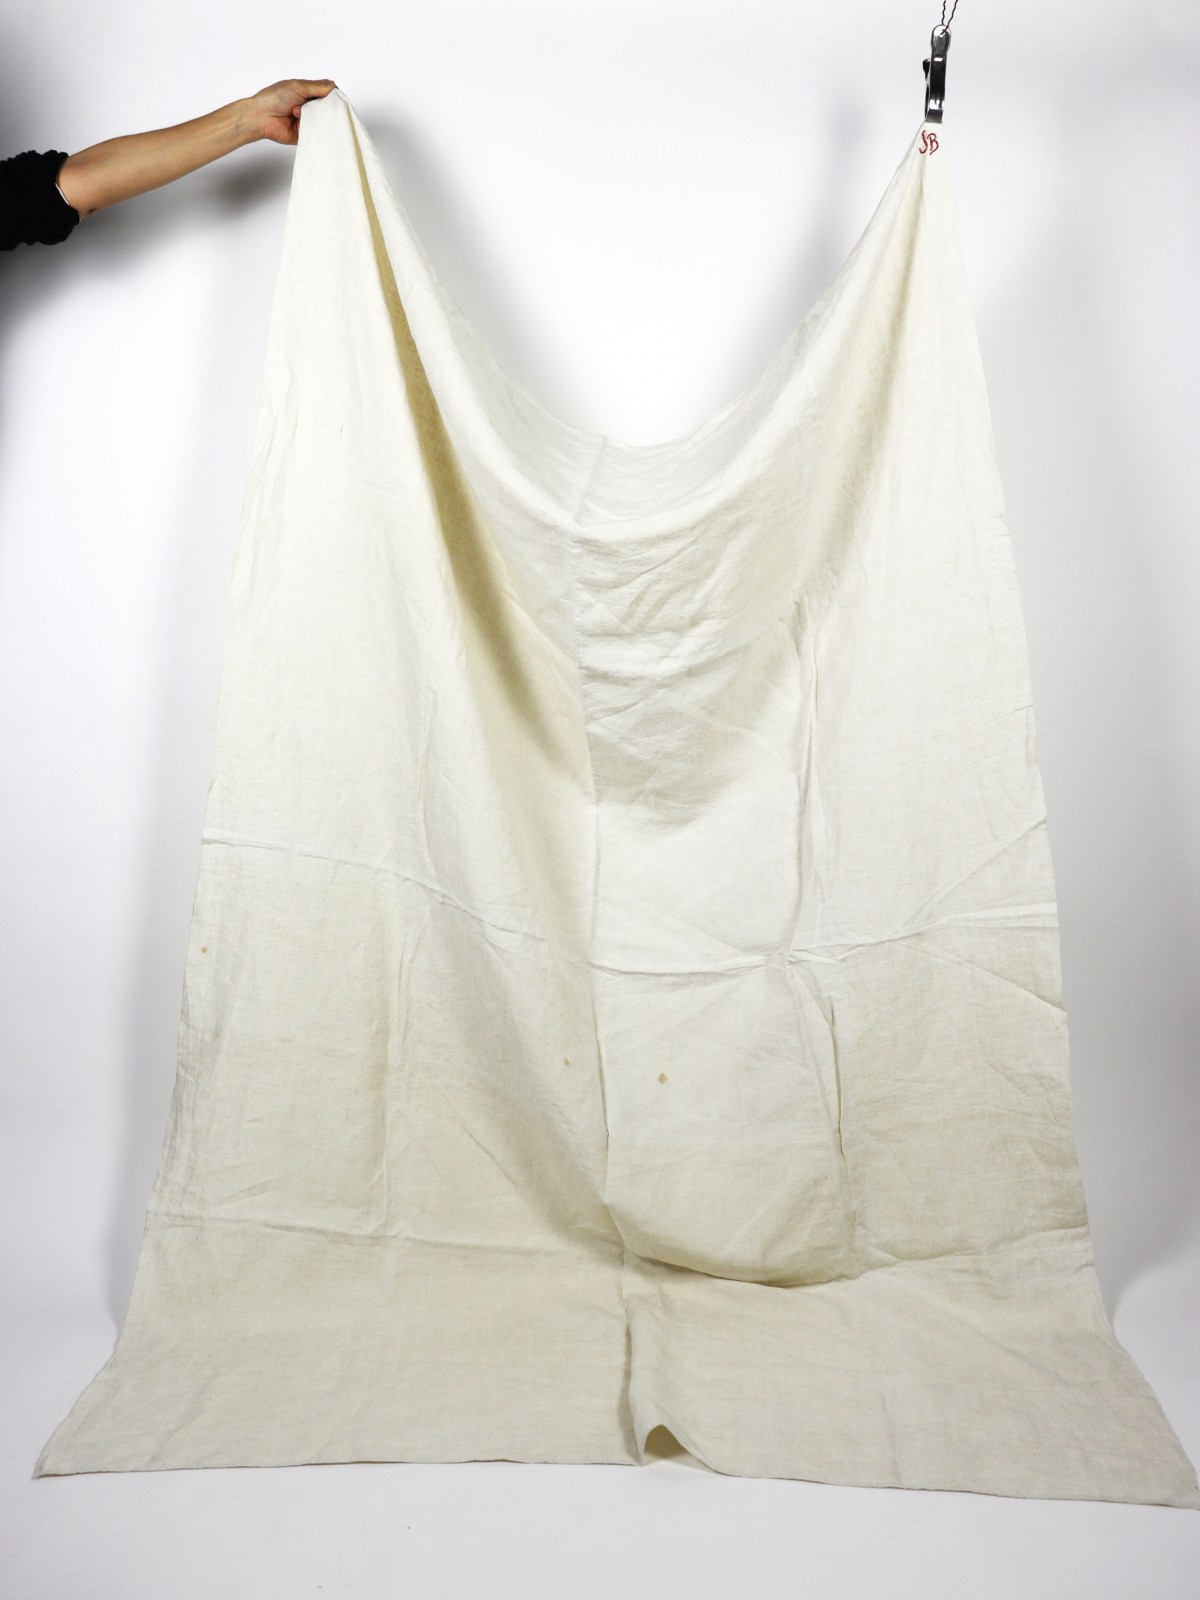 French linen sheet, White line, morogram